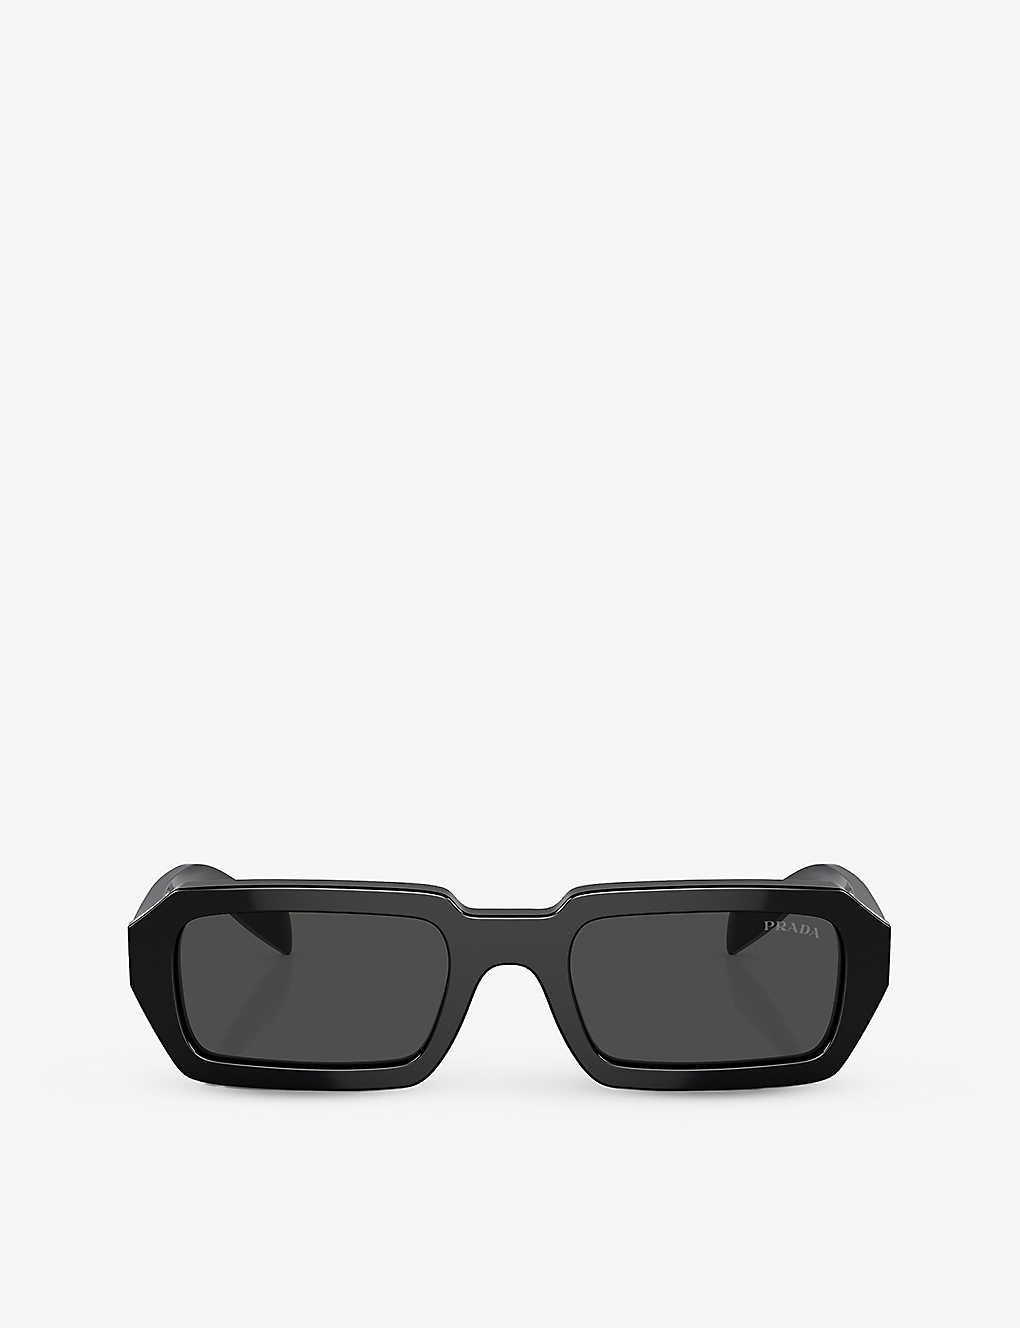 PRADA - PR A12S irregular-frame acetate sunglasses | Selfridges.com